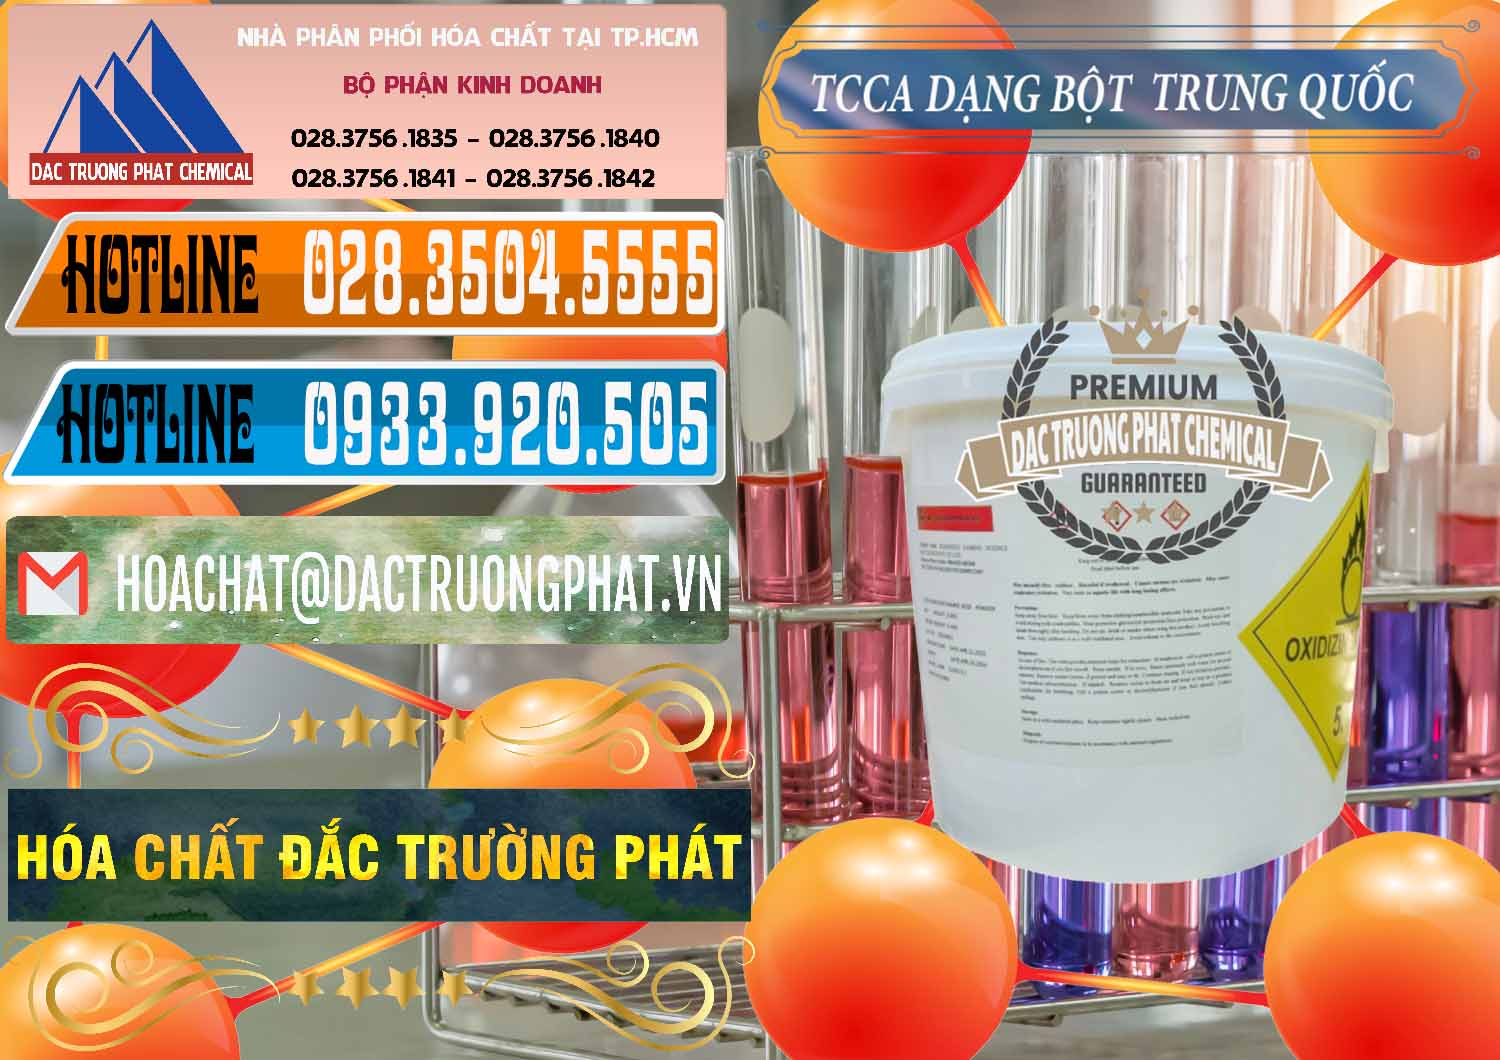 Chuyên bán - cung ứng TCCA - Acid Trichloroisocyanuric Dạng Bột Thùng 5kg Trung Quốc China - 0378 - Đơn vị chuyên bán ( cung cấp ) hóa chất tại TP.HCM - stmp.net